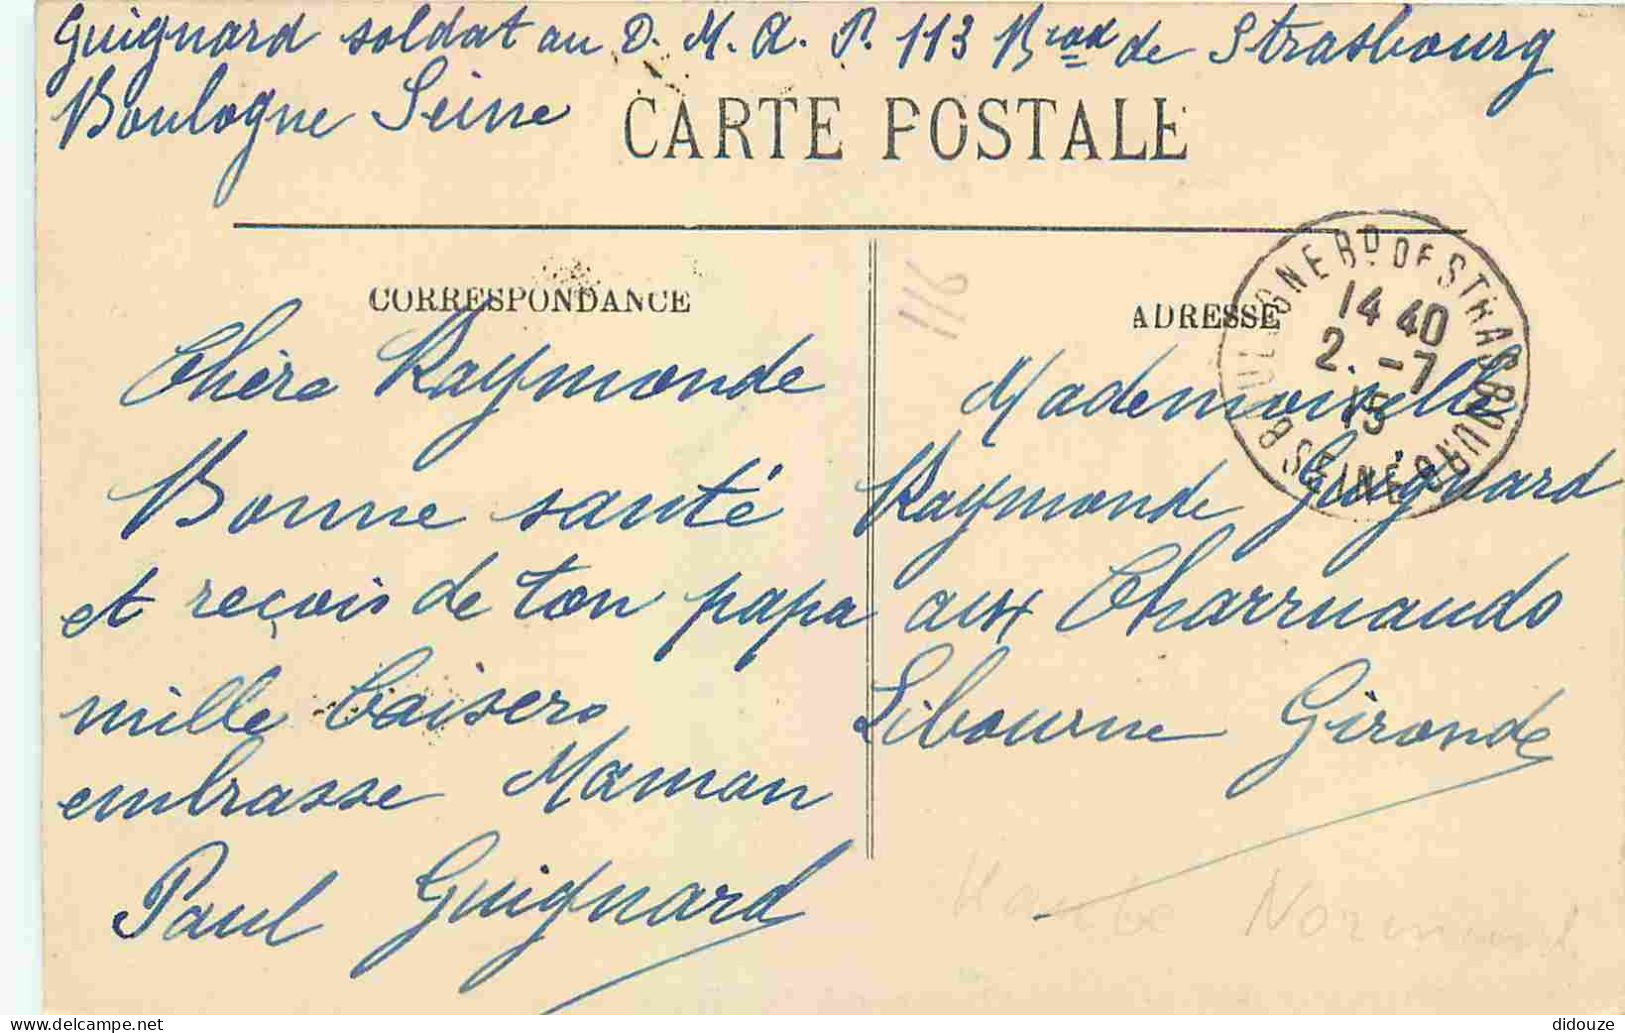 76 - Le Havre - Le Boulevard Maritime Et La Nouvelle Jetée - Animée - Tramway - CPA - Oblitération Ronde De 1915 - Carte - Sin Clasificación